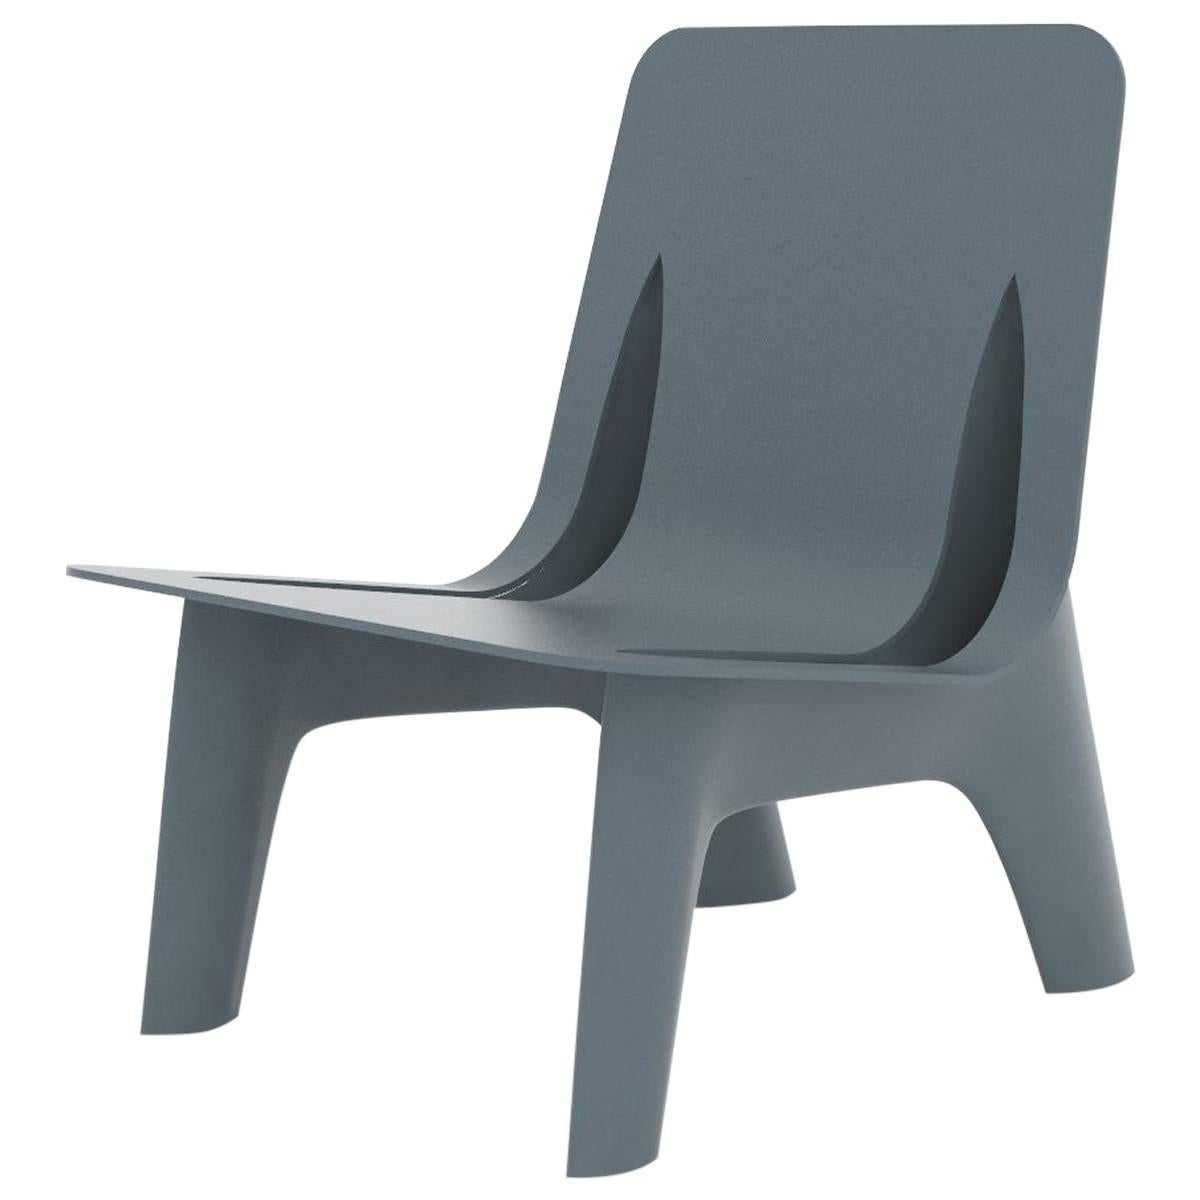 Fauteuil J-Chair en aluminium poli de couleur grise et bleue par Zieta